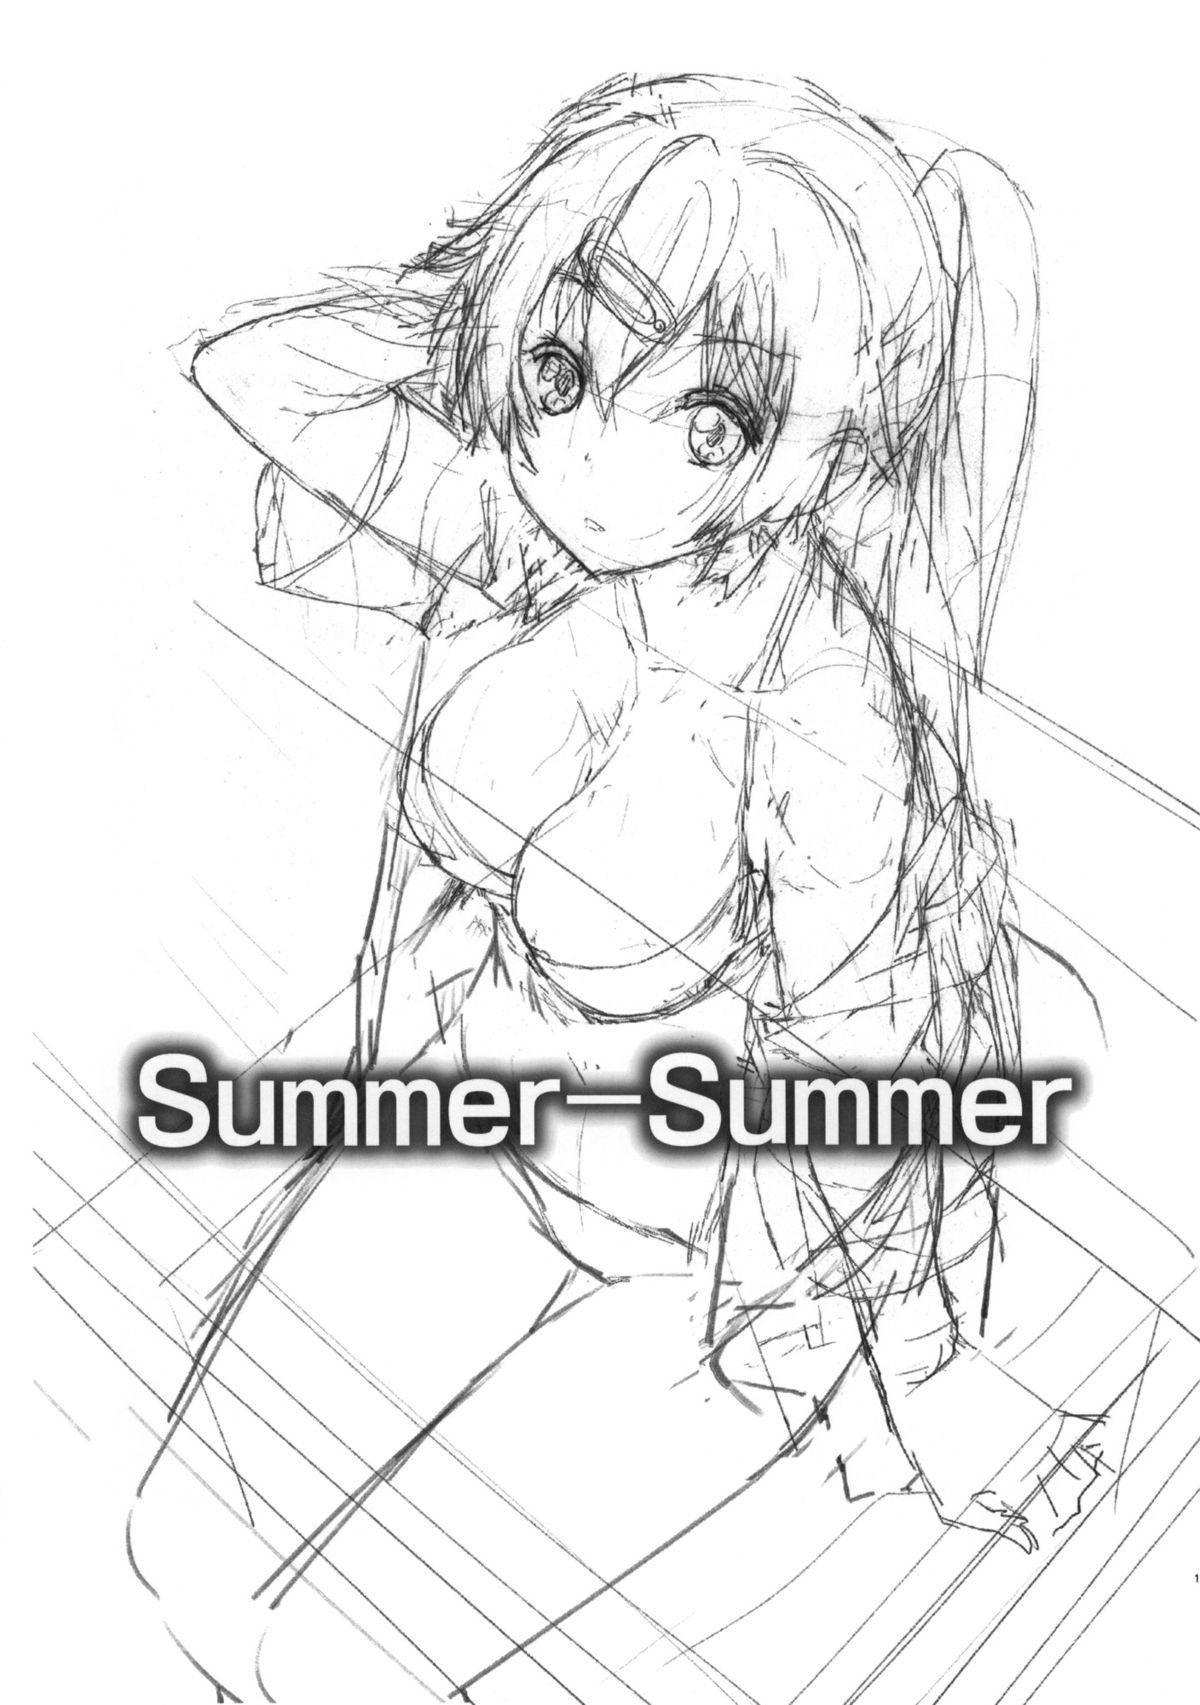 Sperm Summer-Summer - Chuunibyou demo koi ga shitai Nipple - Page 2